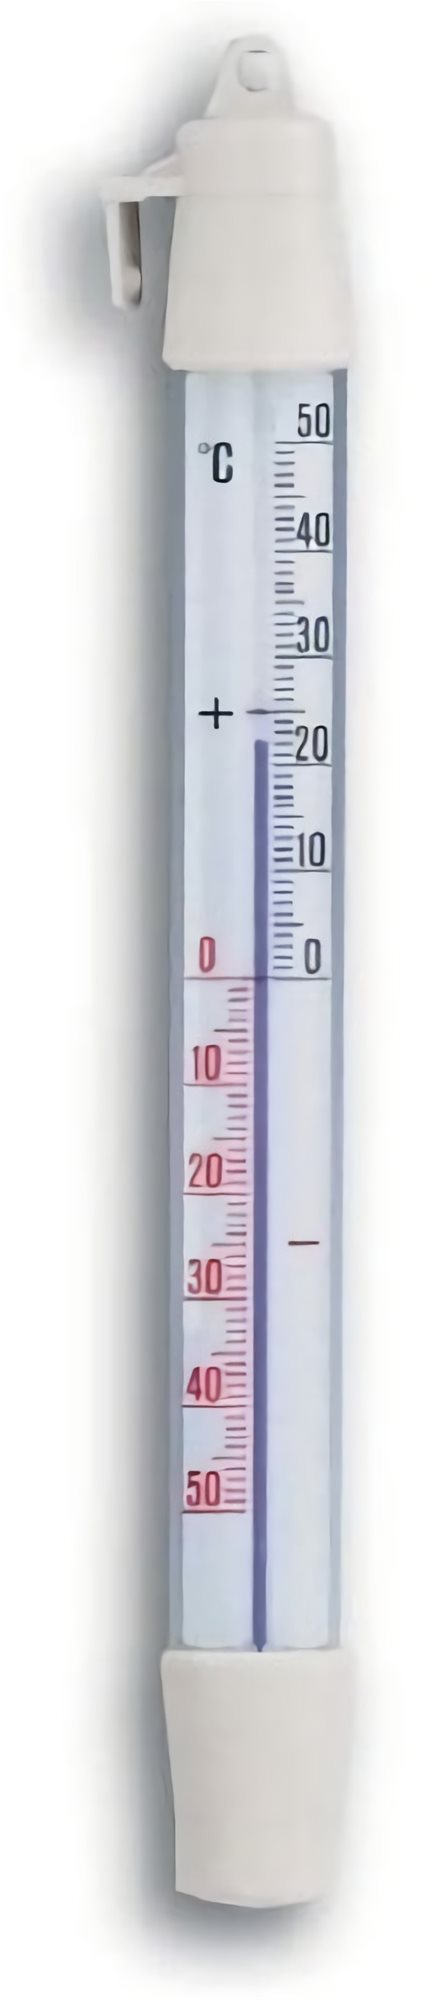 Hőmérő TFA 14 . 4003.02.98 – Folyadékos hőmérő hűtőszekrénybe/fagyasztóba